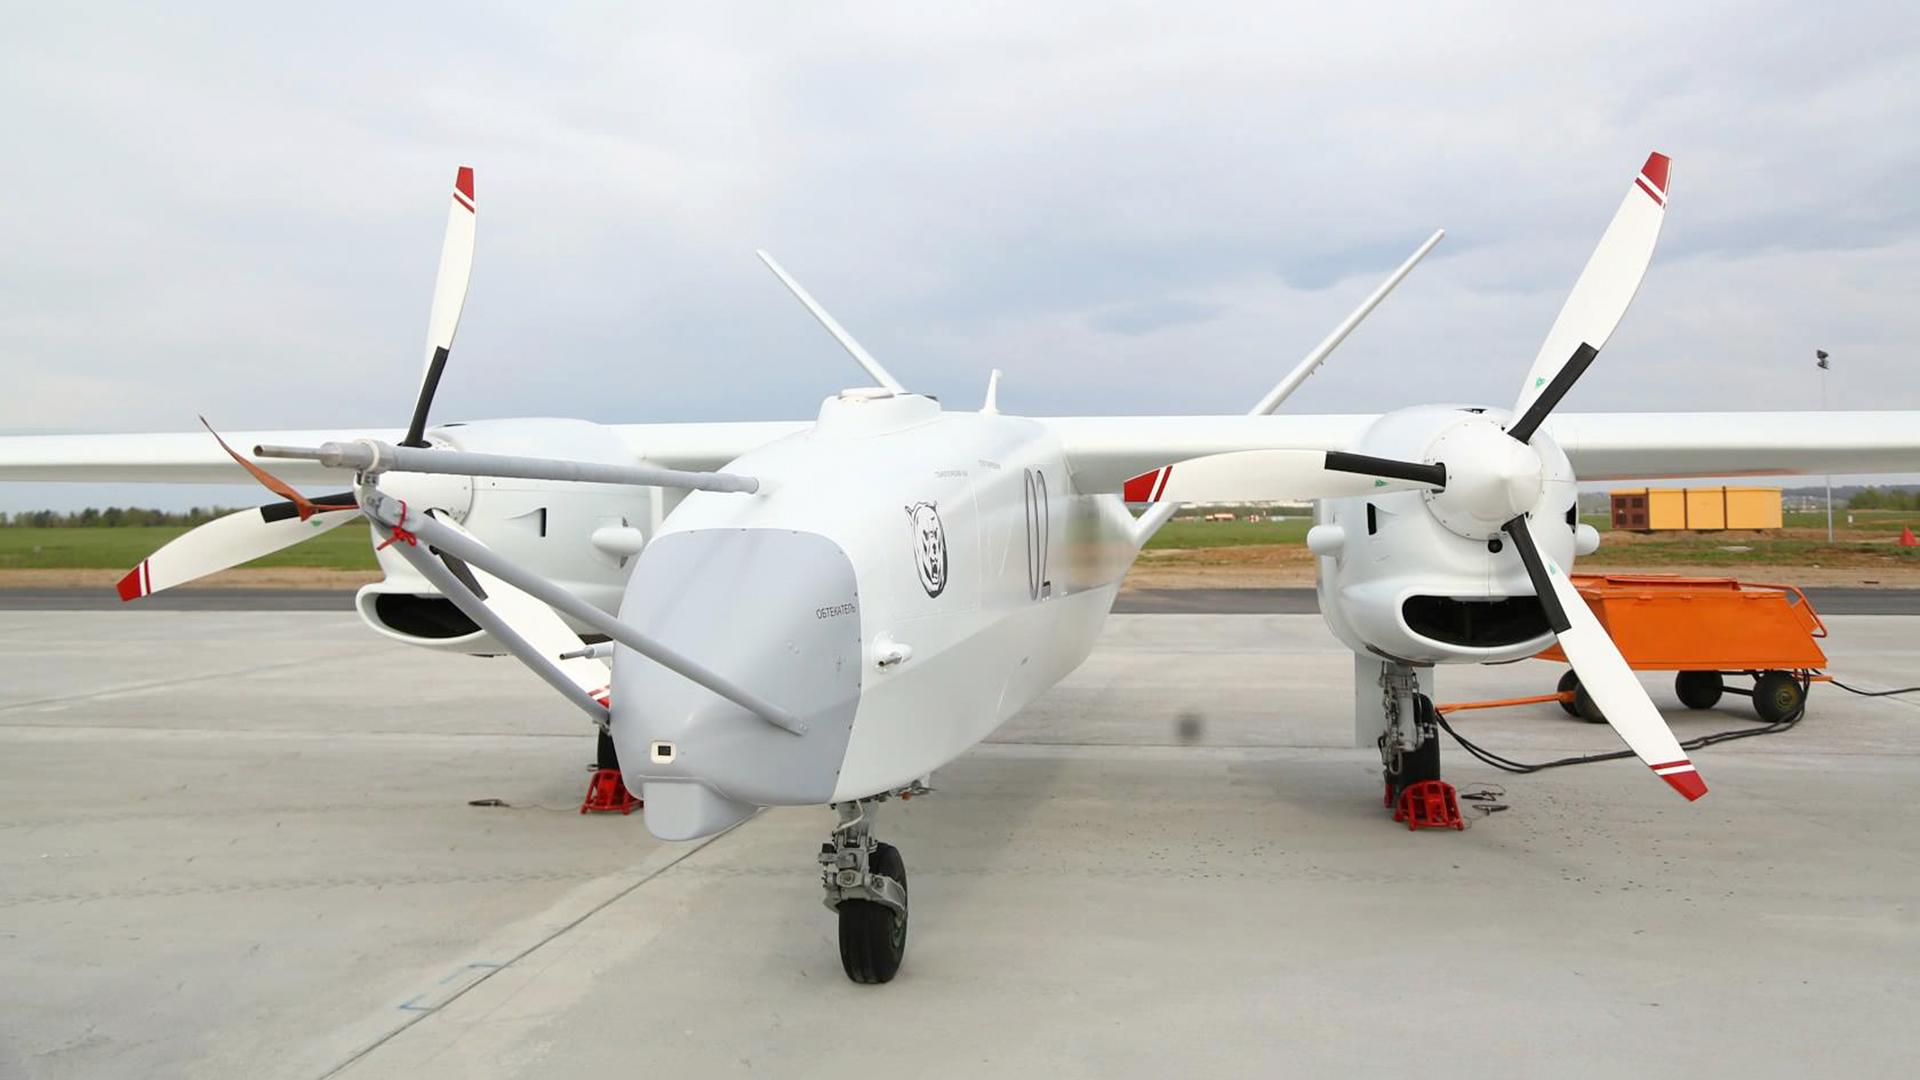 Russland baut in 11 Jahren die Drohne Altius, um Bayraktar TB2 und MQ-Reaper zu übertreffen - hat aber 17 Millionen Dollar gestohlen